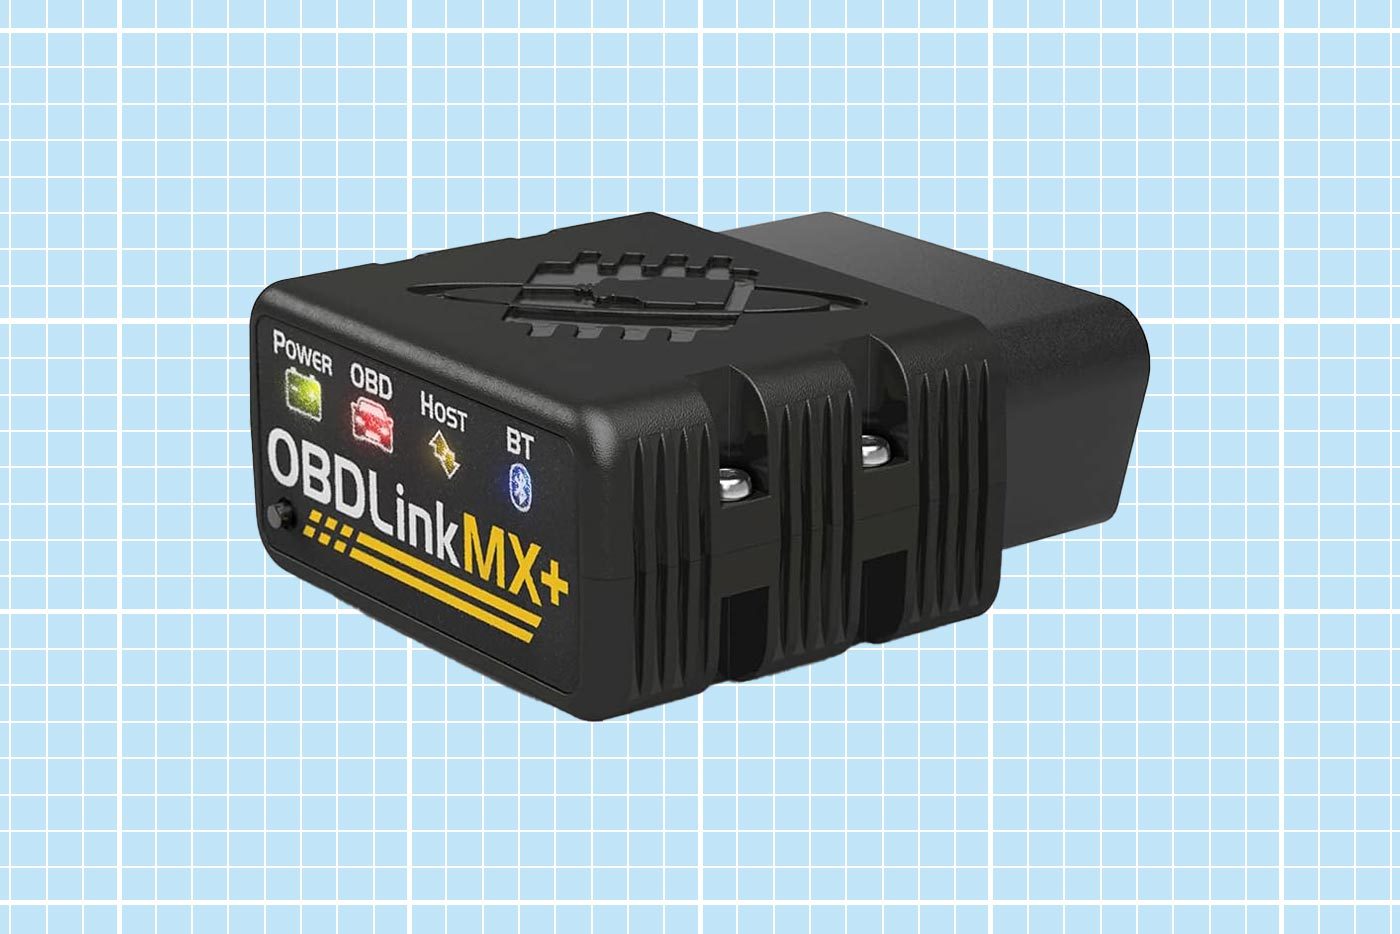 Obdlink Mx+ Obd2 Bluetooth Scanner 